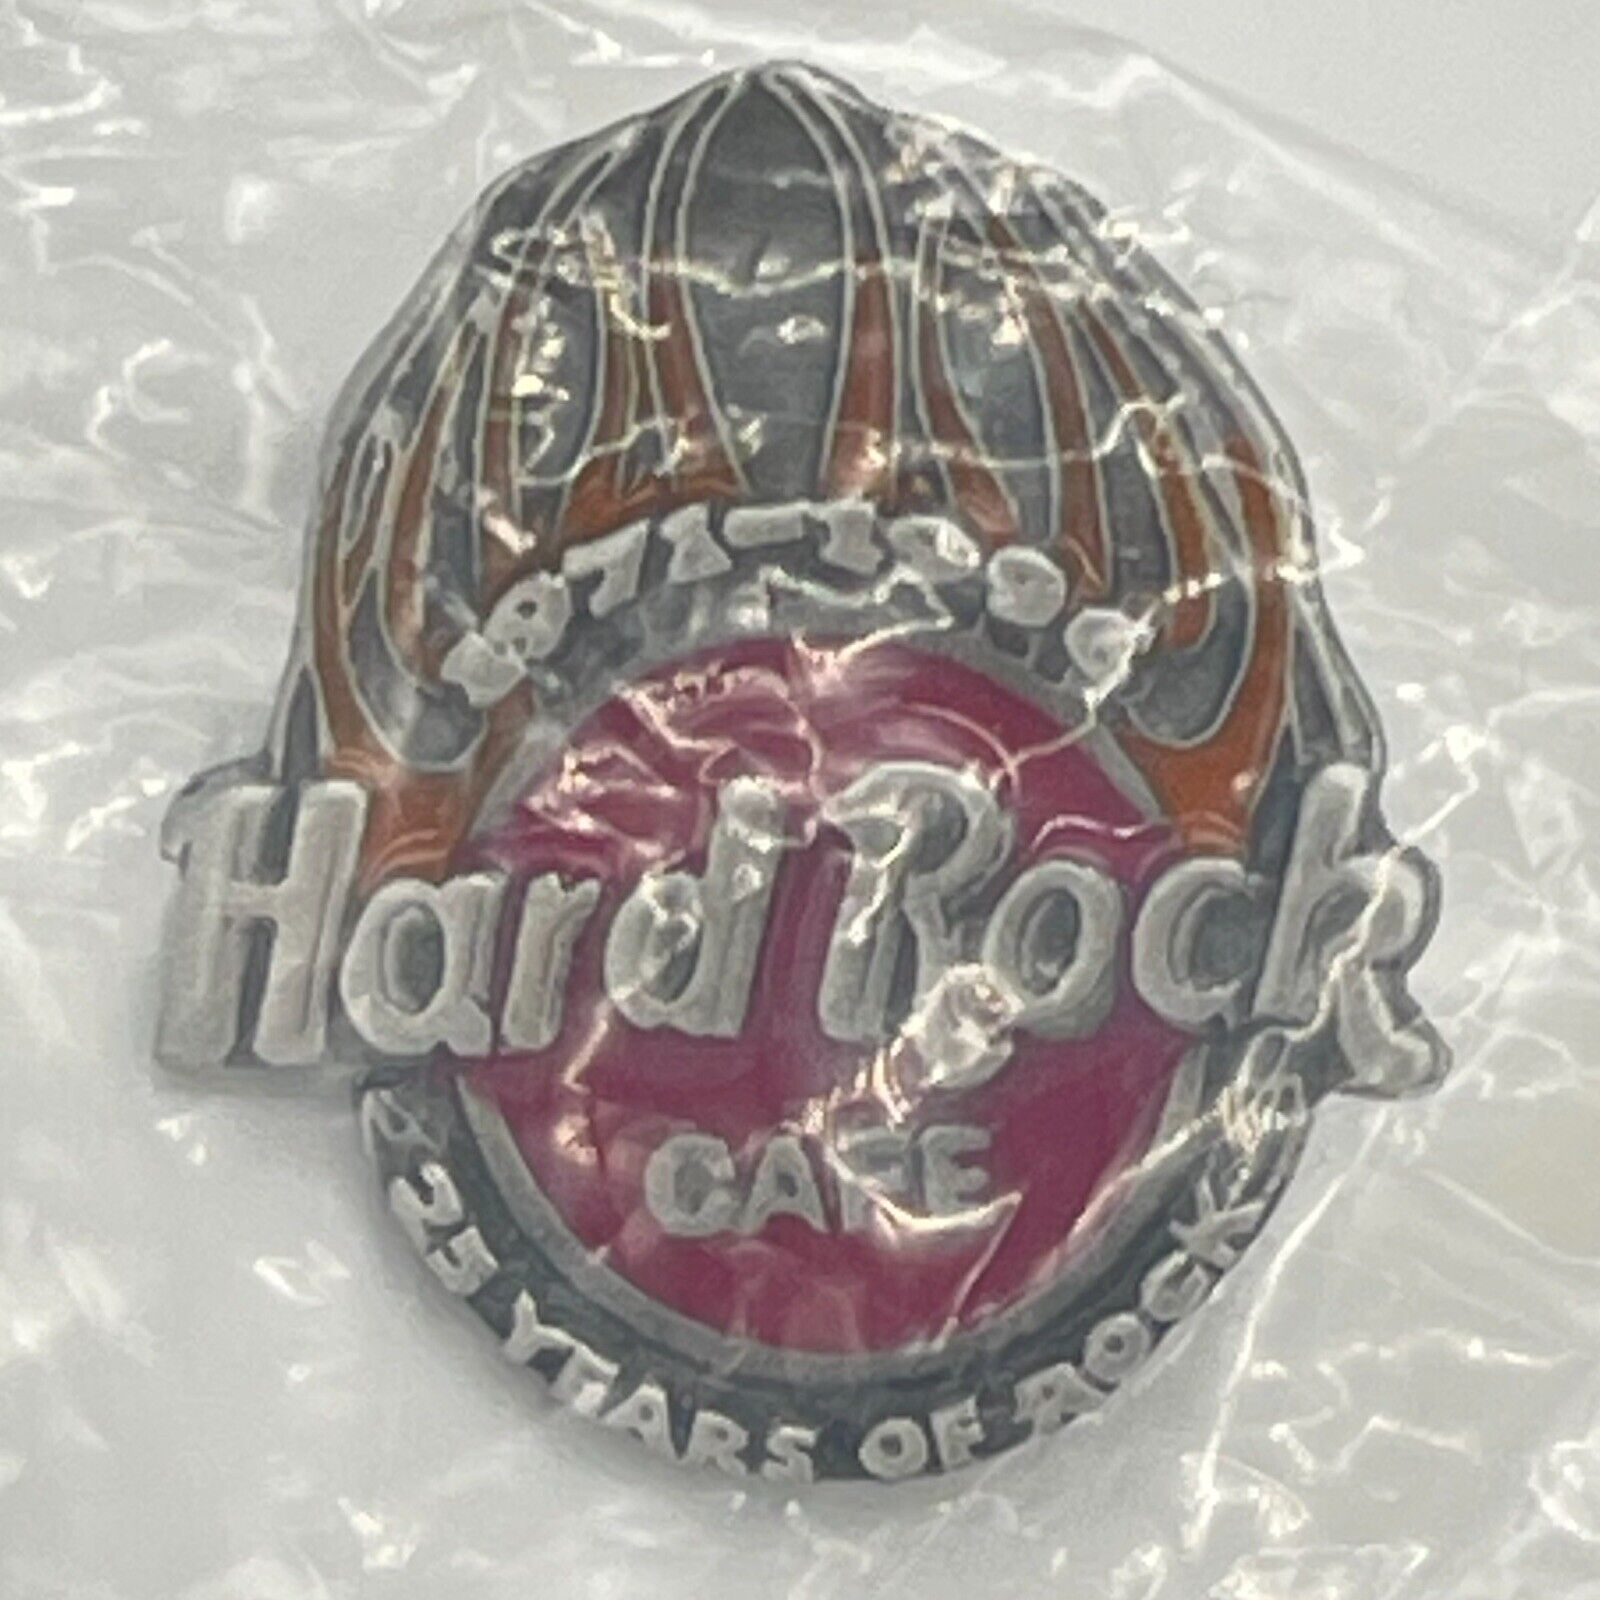 Vintage Hard Rock Cafe Pin 25 Years of Rock Yellow Flame Logo Pewter 1986-1996